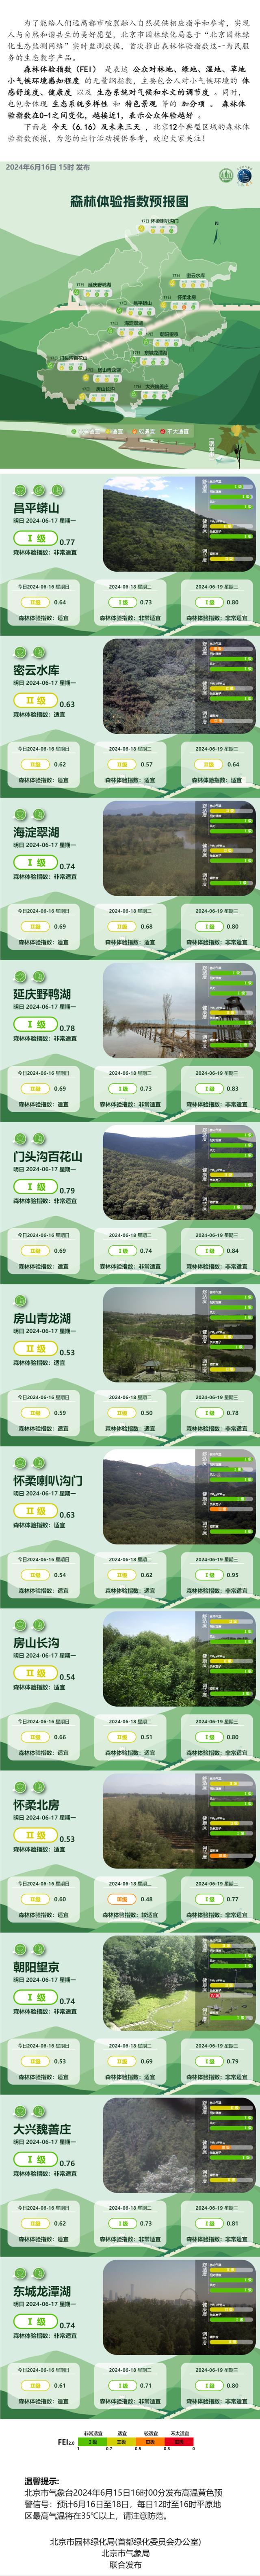 6月16日北京森林体验指数预报